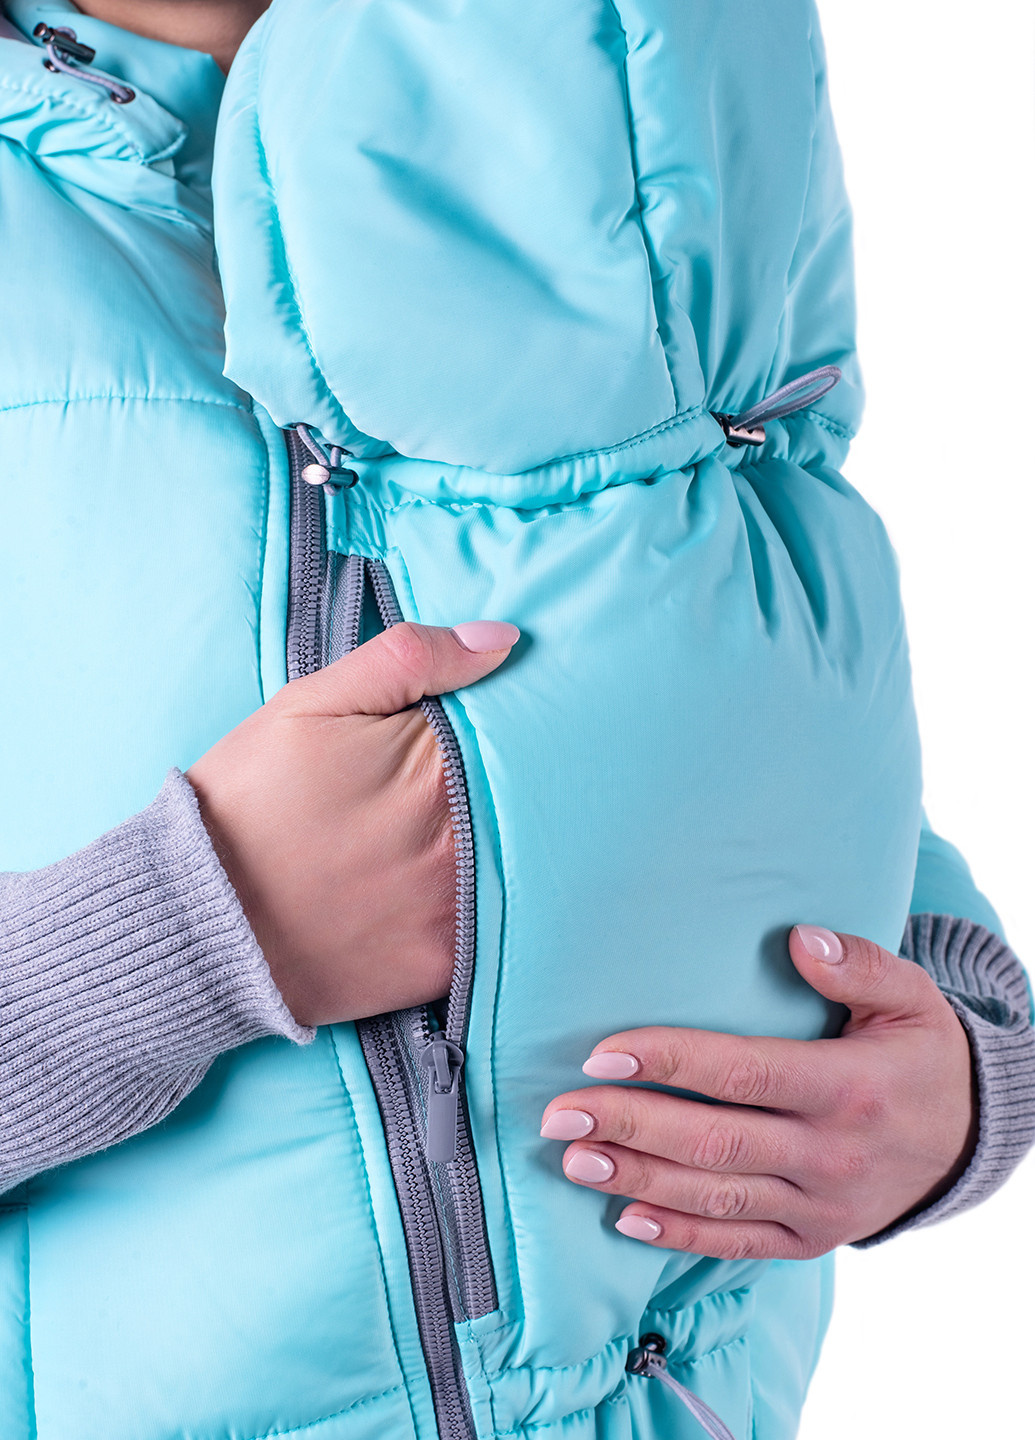 Блакитна демісезонна куртка 3в1 для вагітних Lullababe